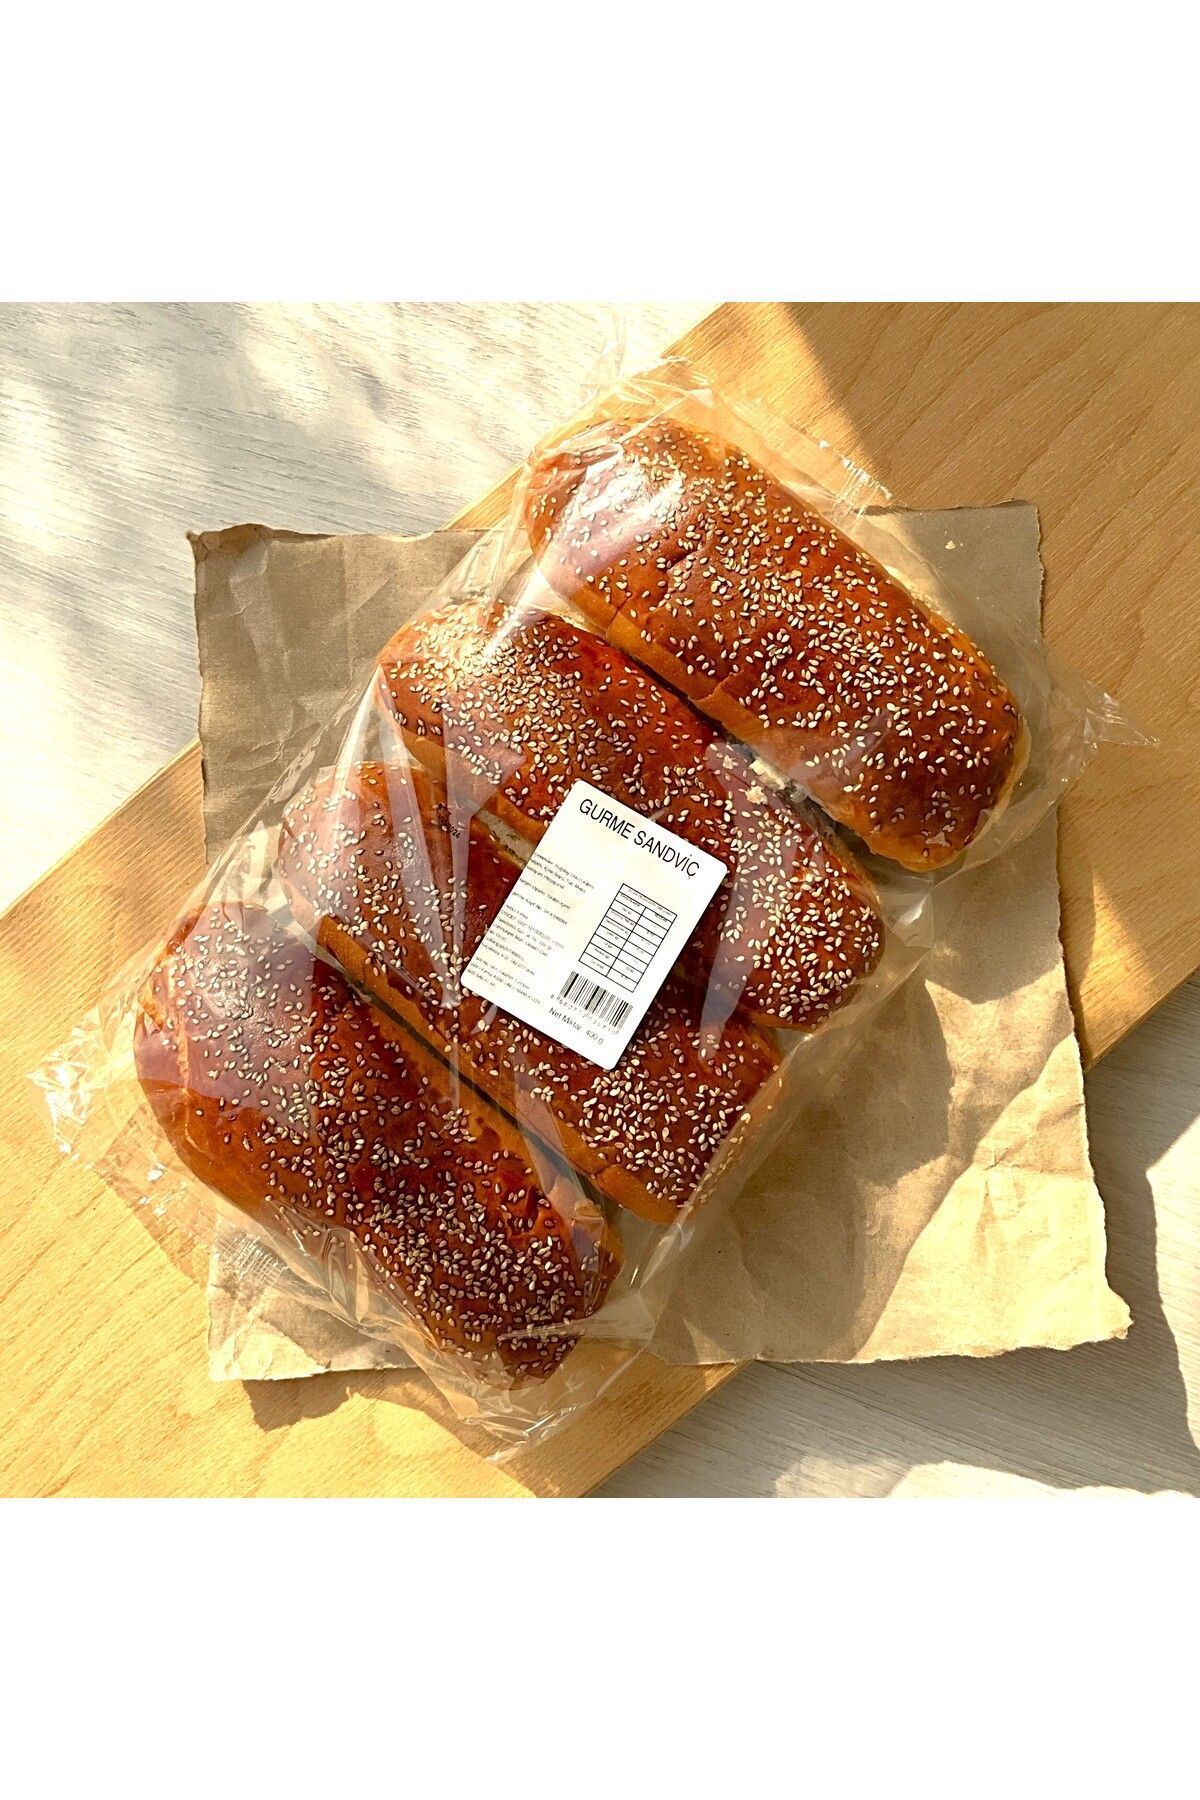 ASAF UNLU MAMULLERİ Gurme Sandviç Ekmeği 100 gr (4X100)